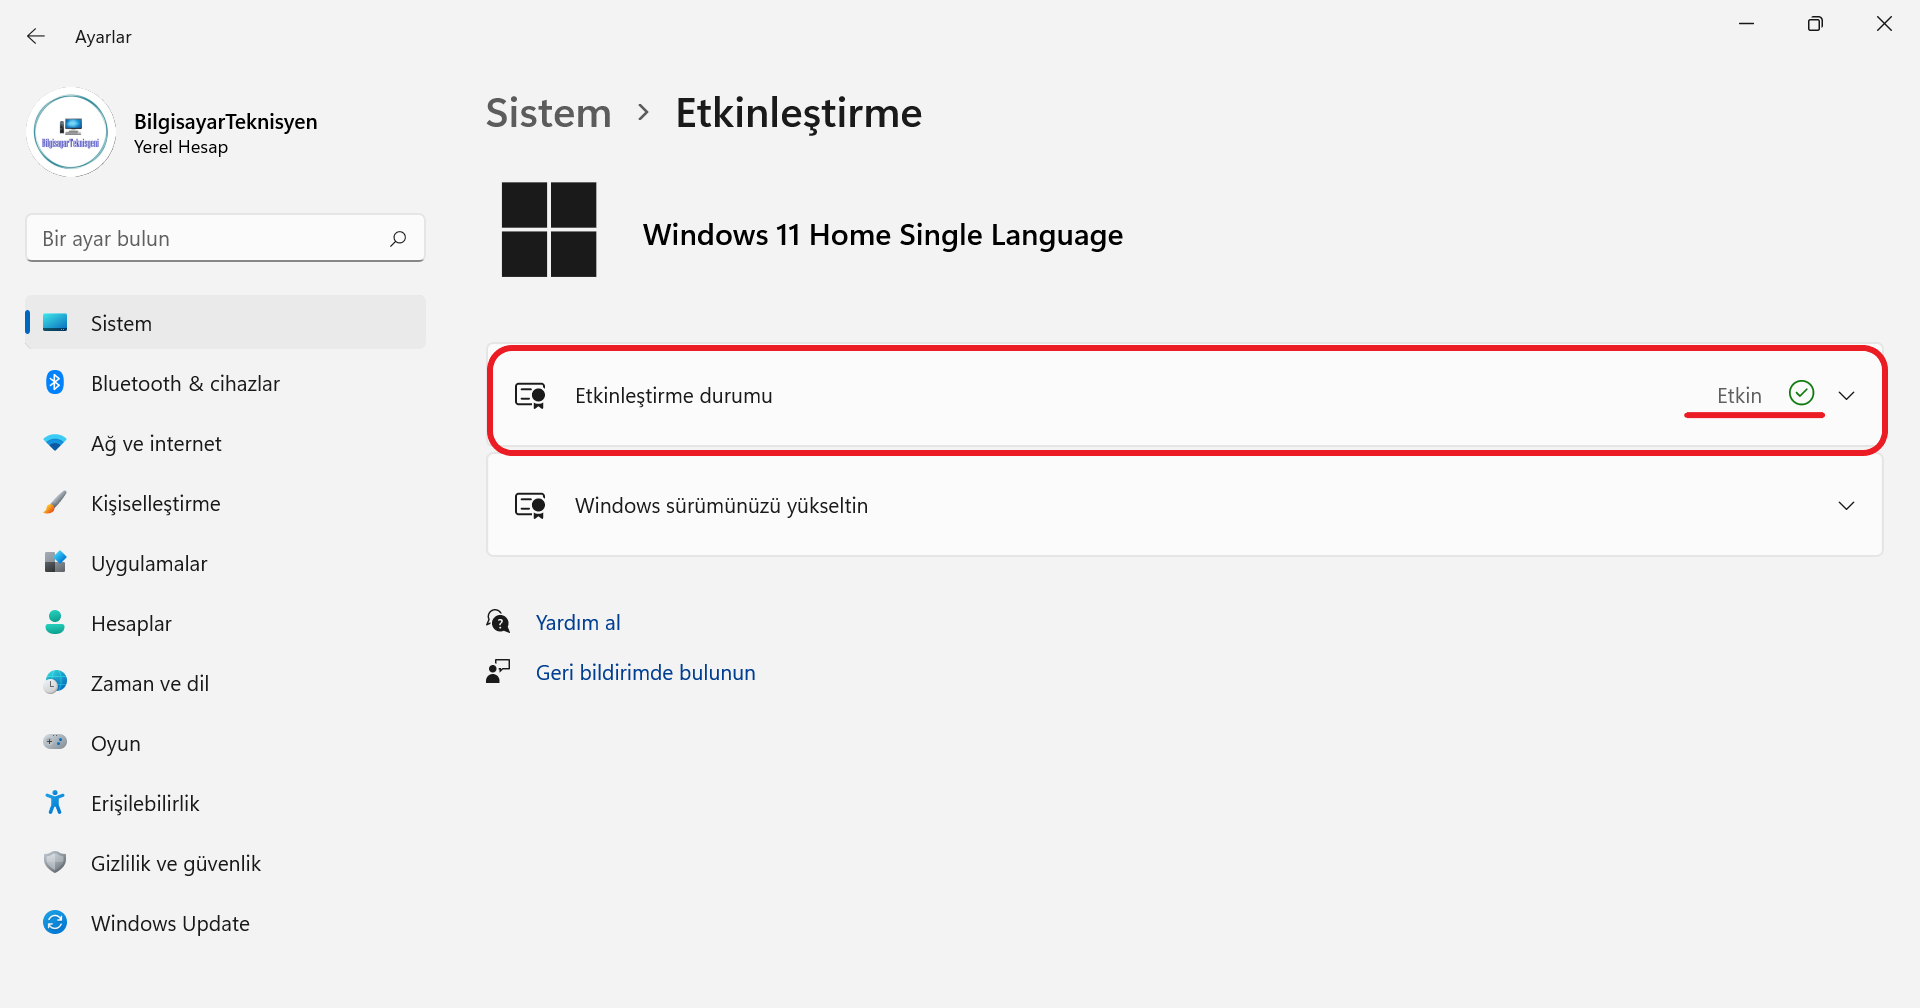 Windows 11 Etkin sayfası görüntüsü